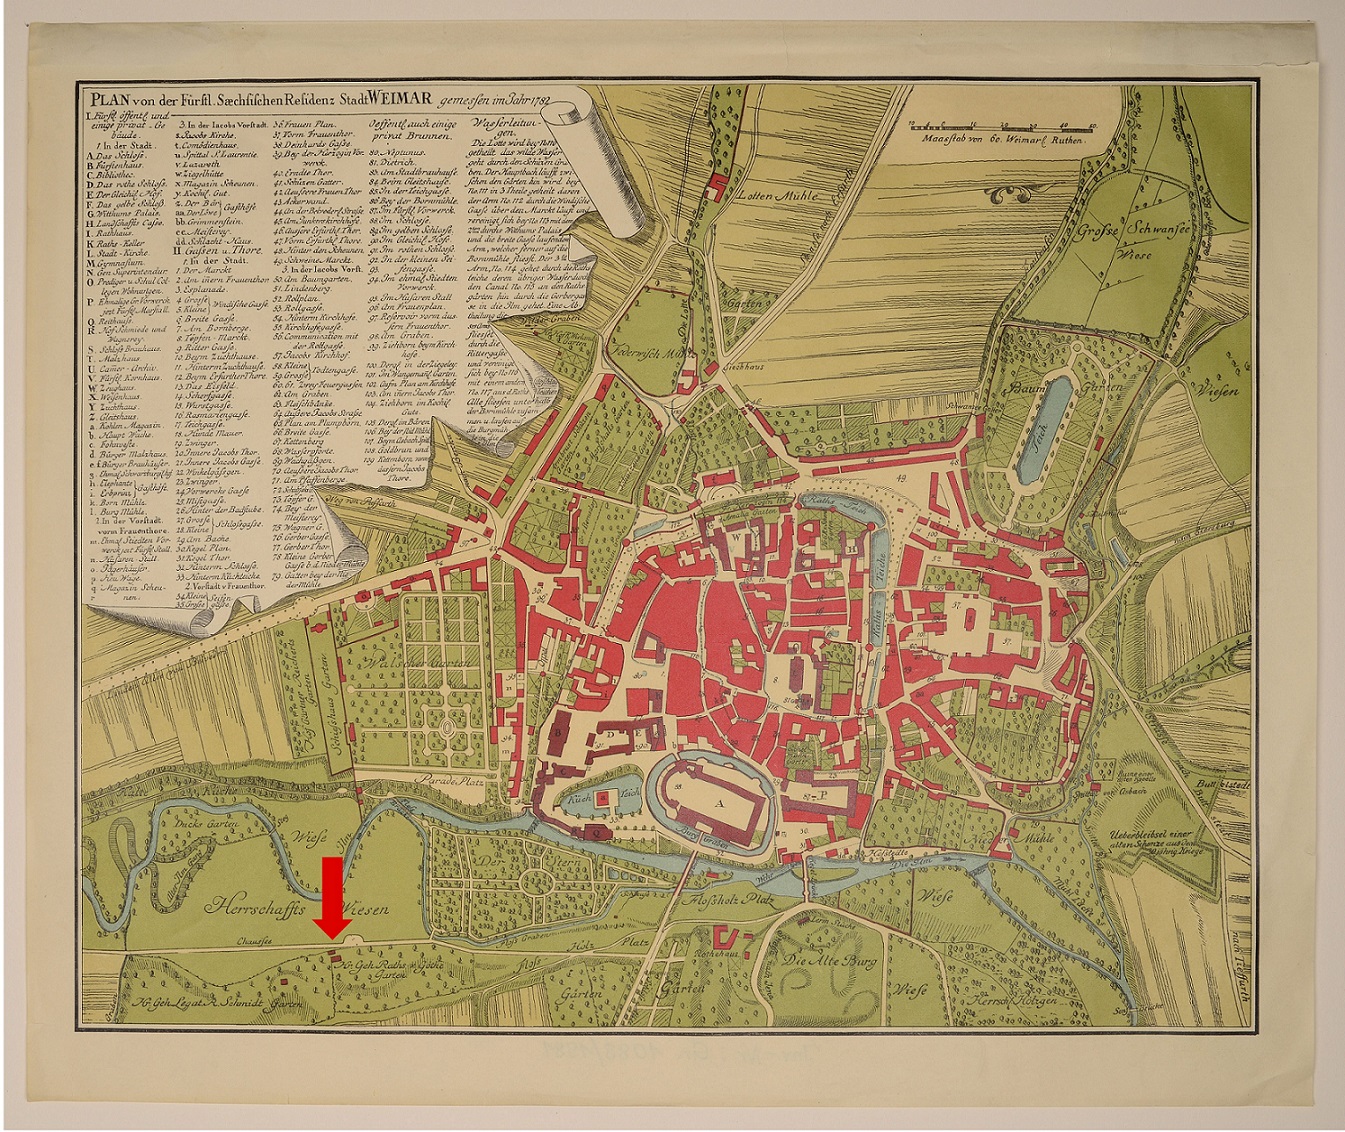 Plan von der Fürstlichen Sächsischen Residenz Stadt Weimar